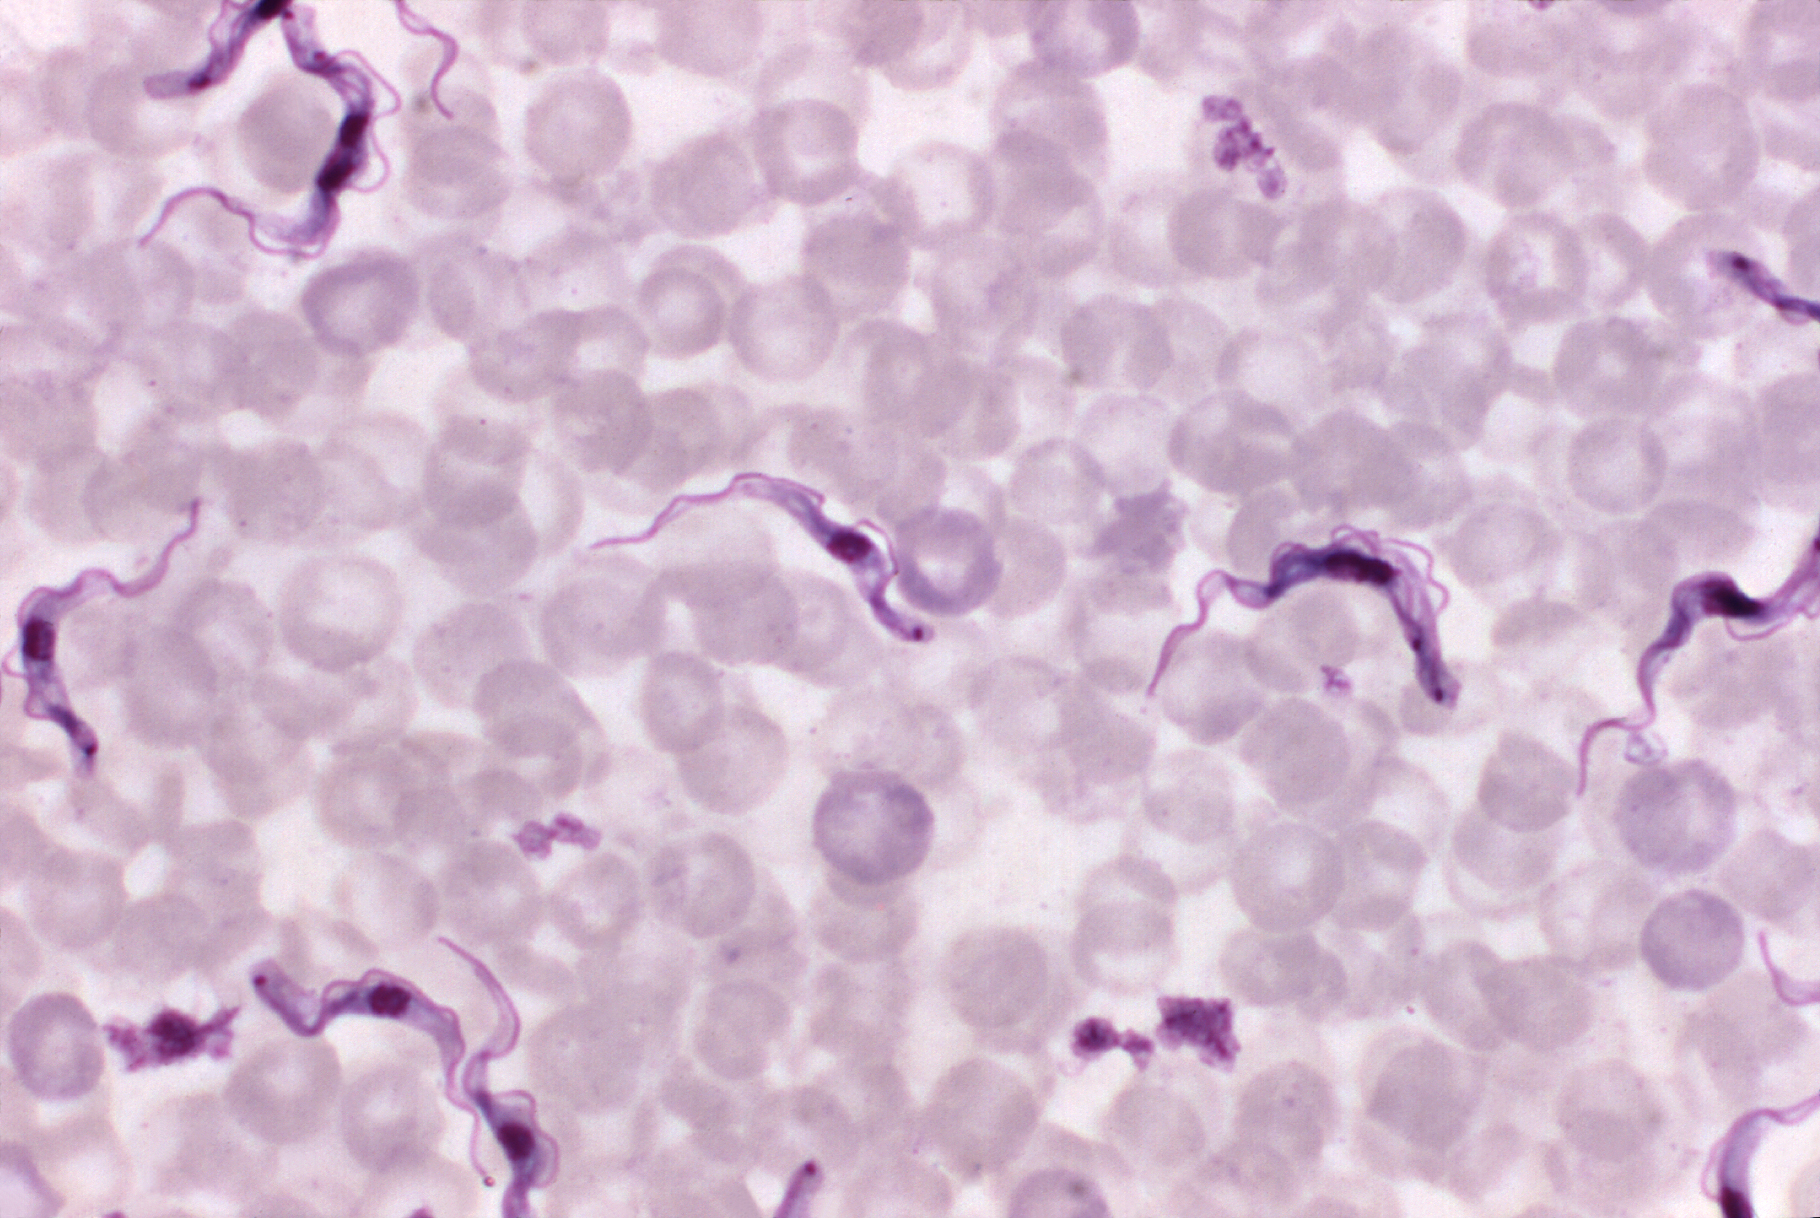 microscopy of Trypanosoma brucei parasites